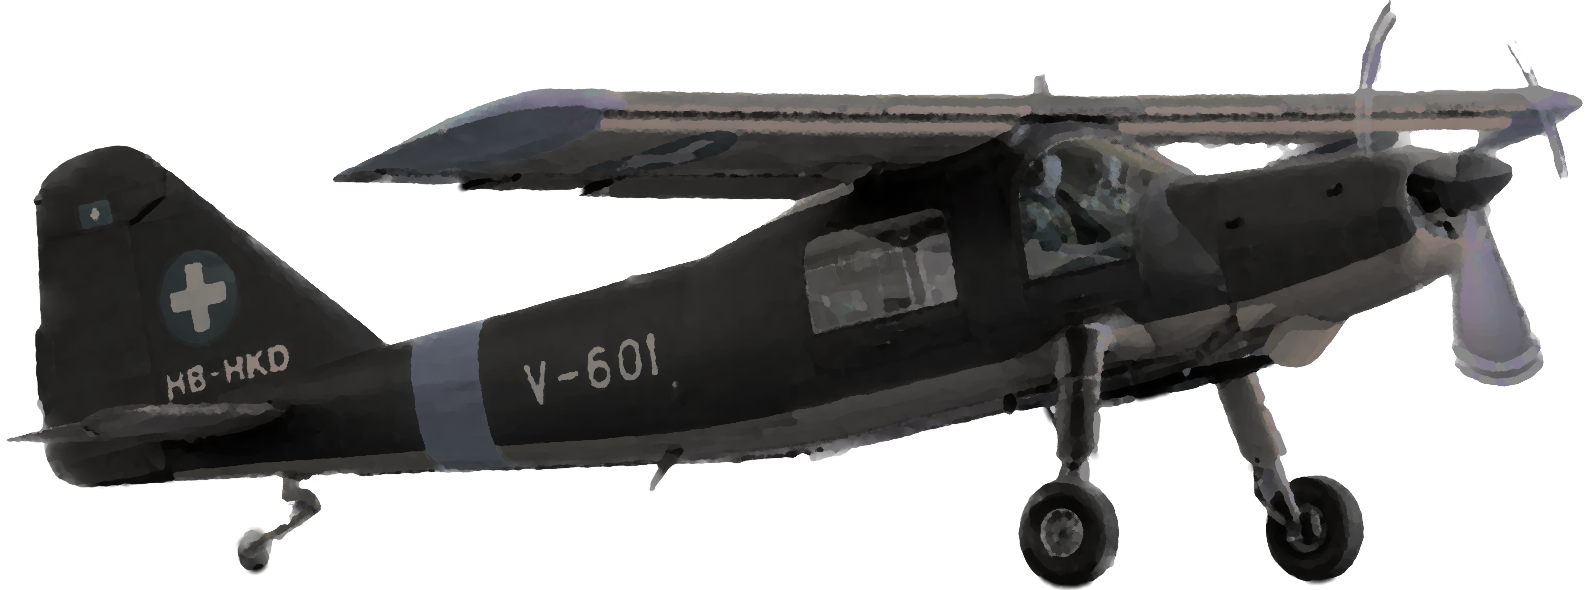 Dornier Do 27 H-2 “HB-HKD”